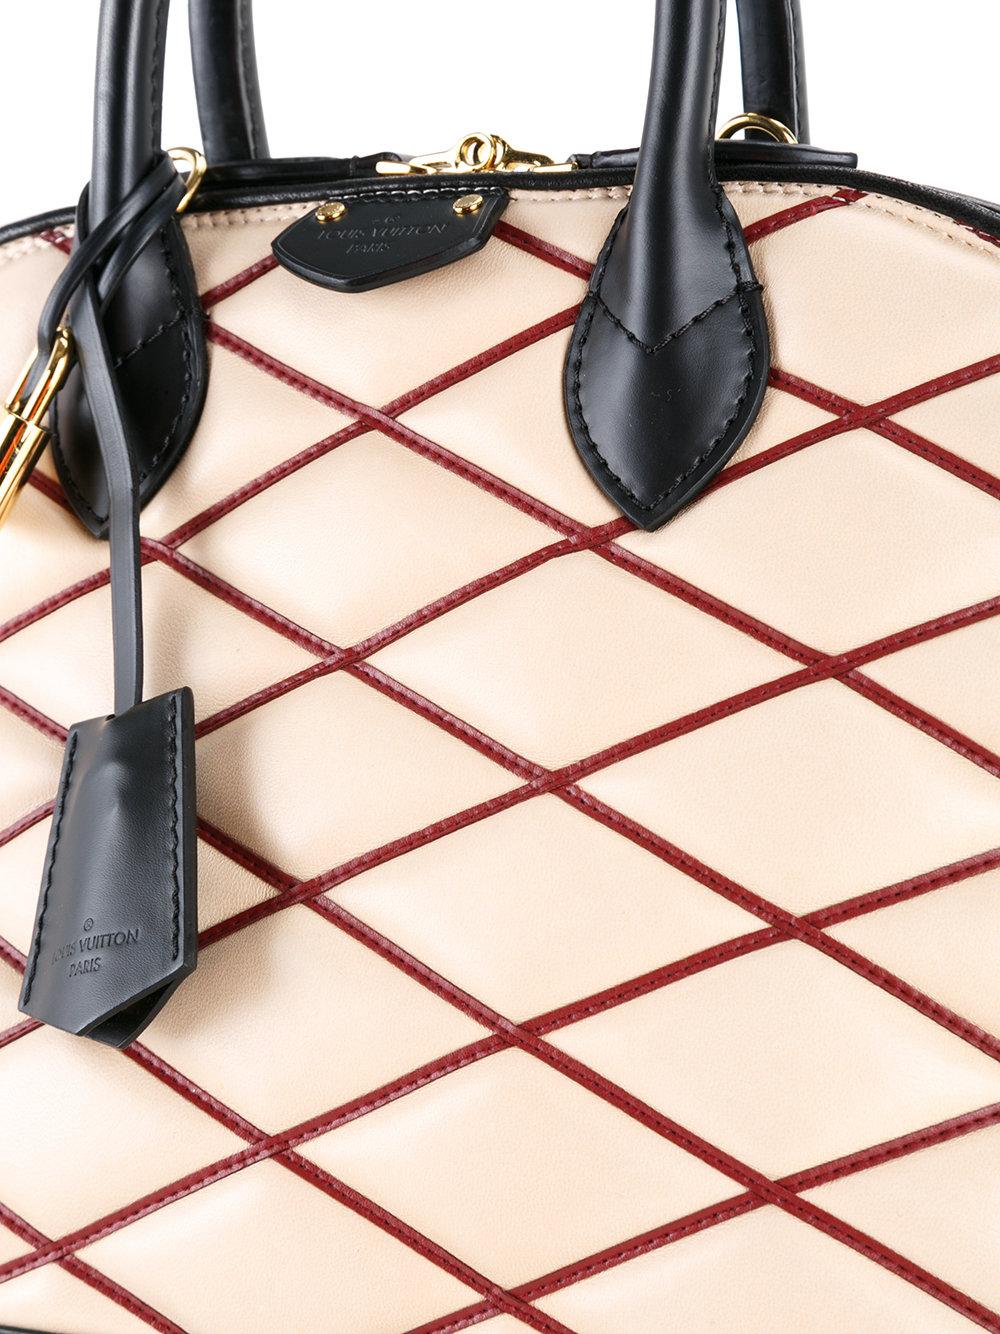 Lyst - Louis Vuitton Alma Pm Malletage Shoulder Bag